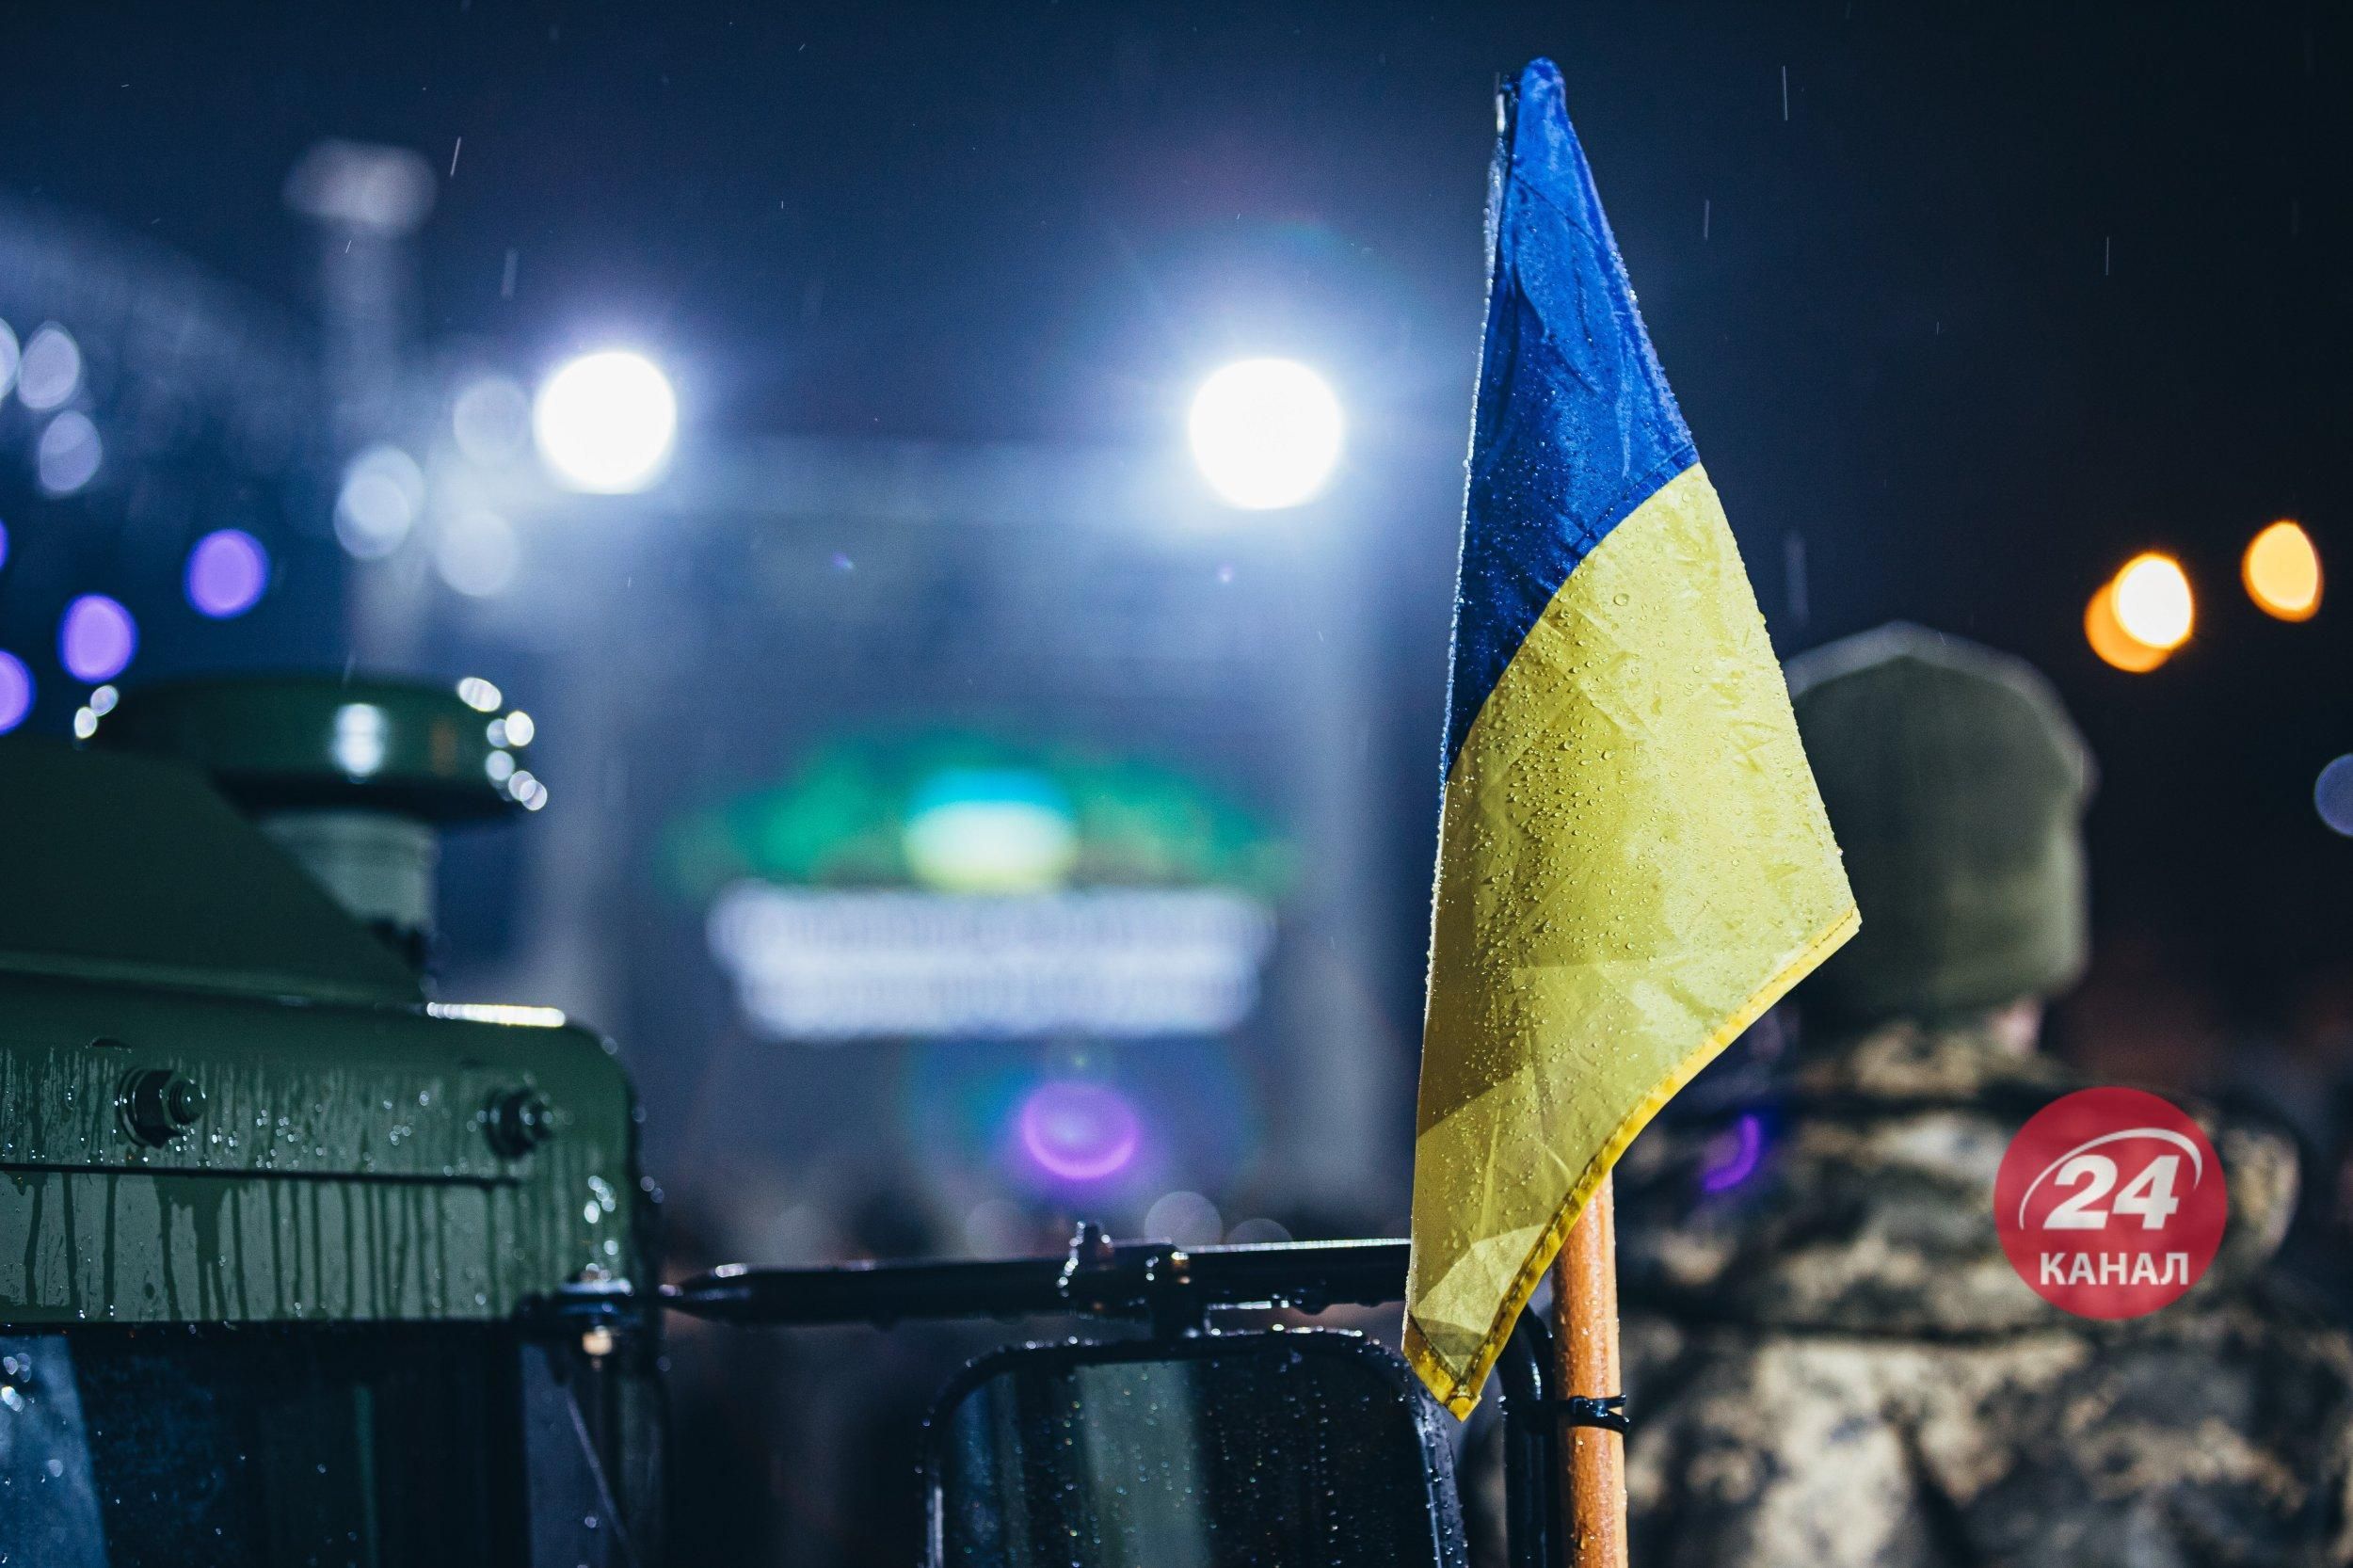 Є 3 завдання, – аналітик сказав, за яких умов "Рамштайн-3" буде успішним для України